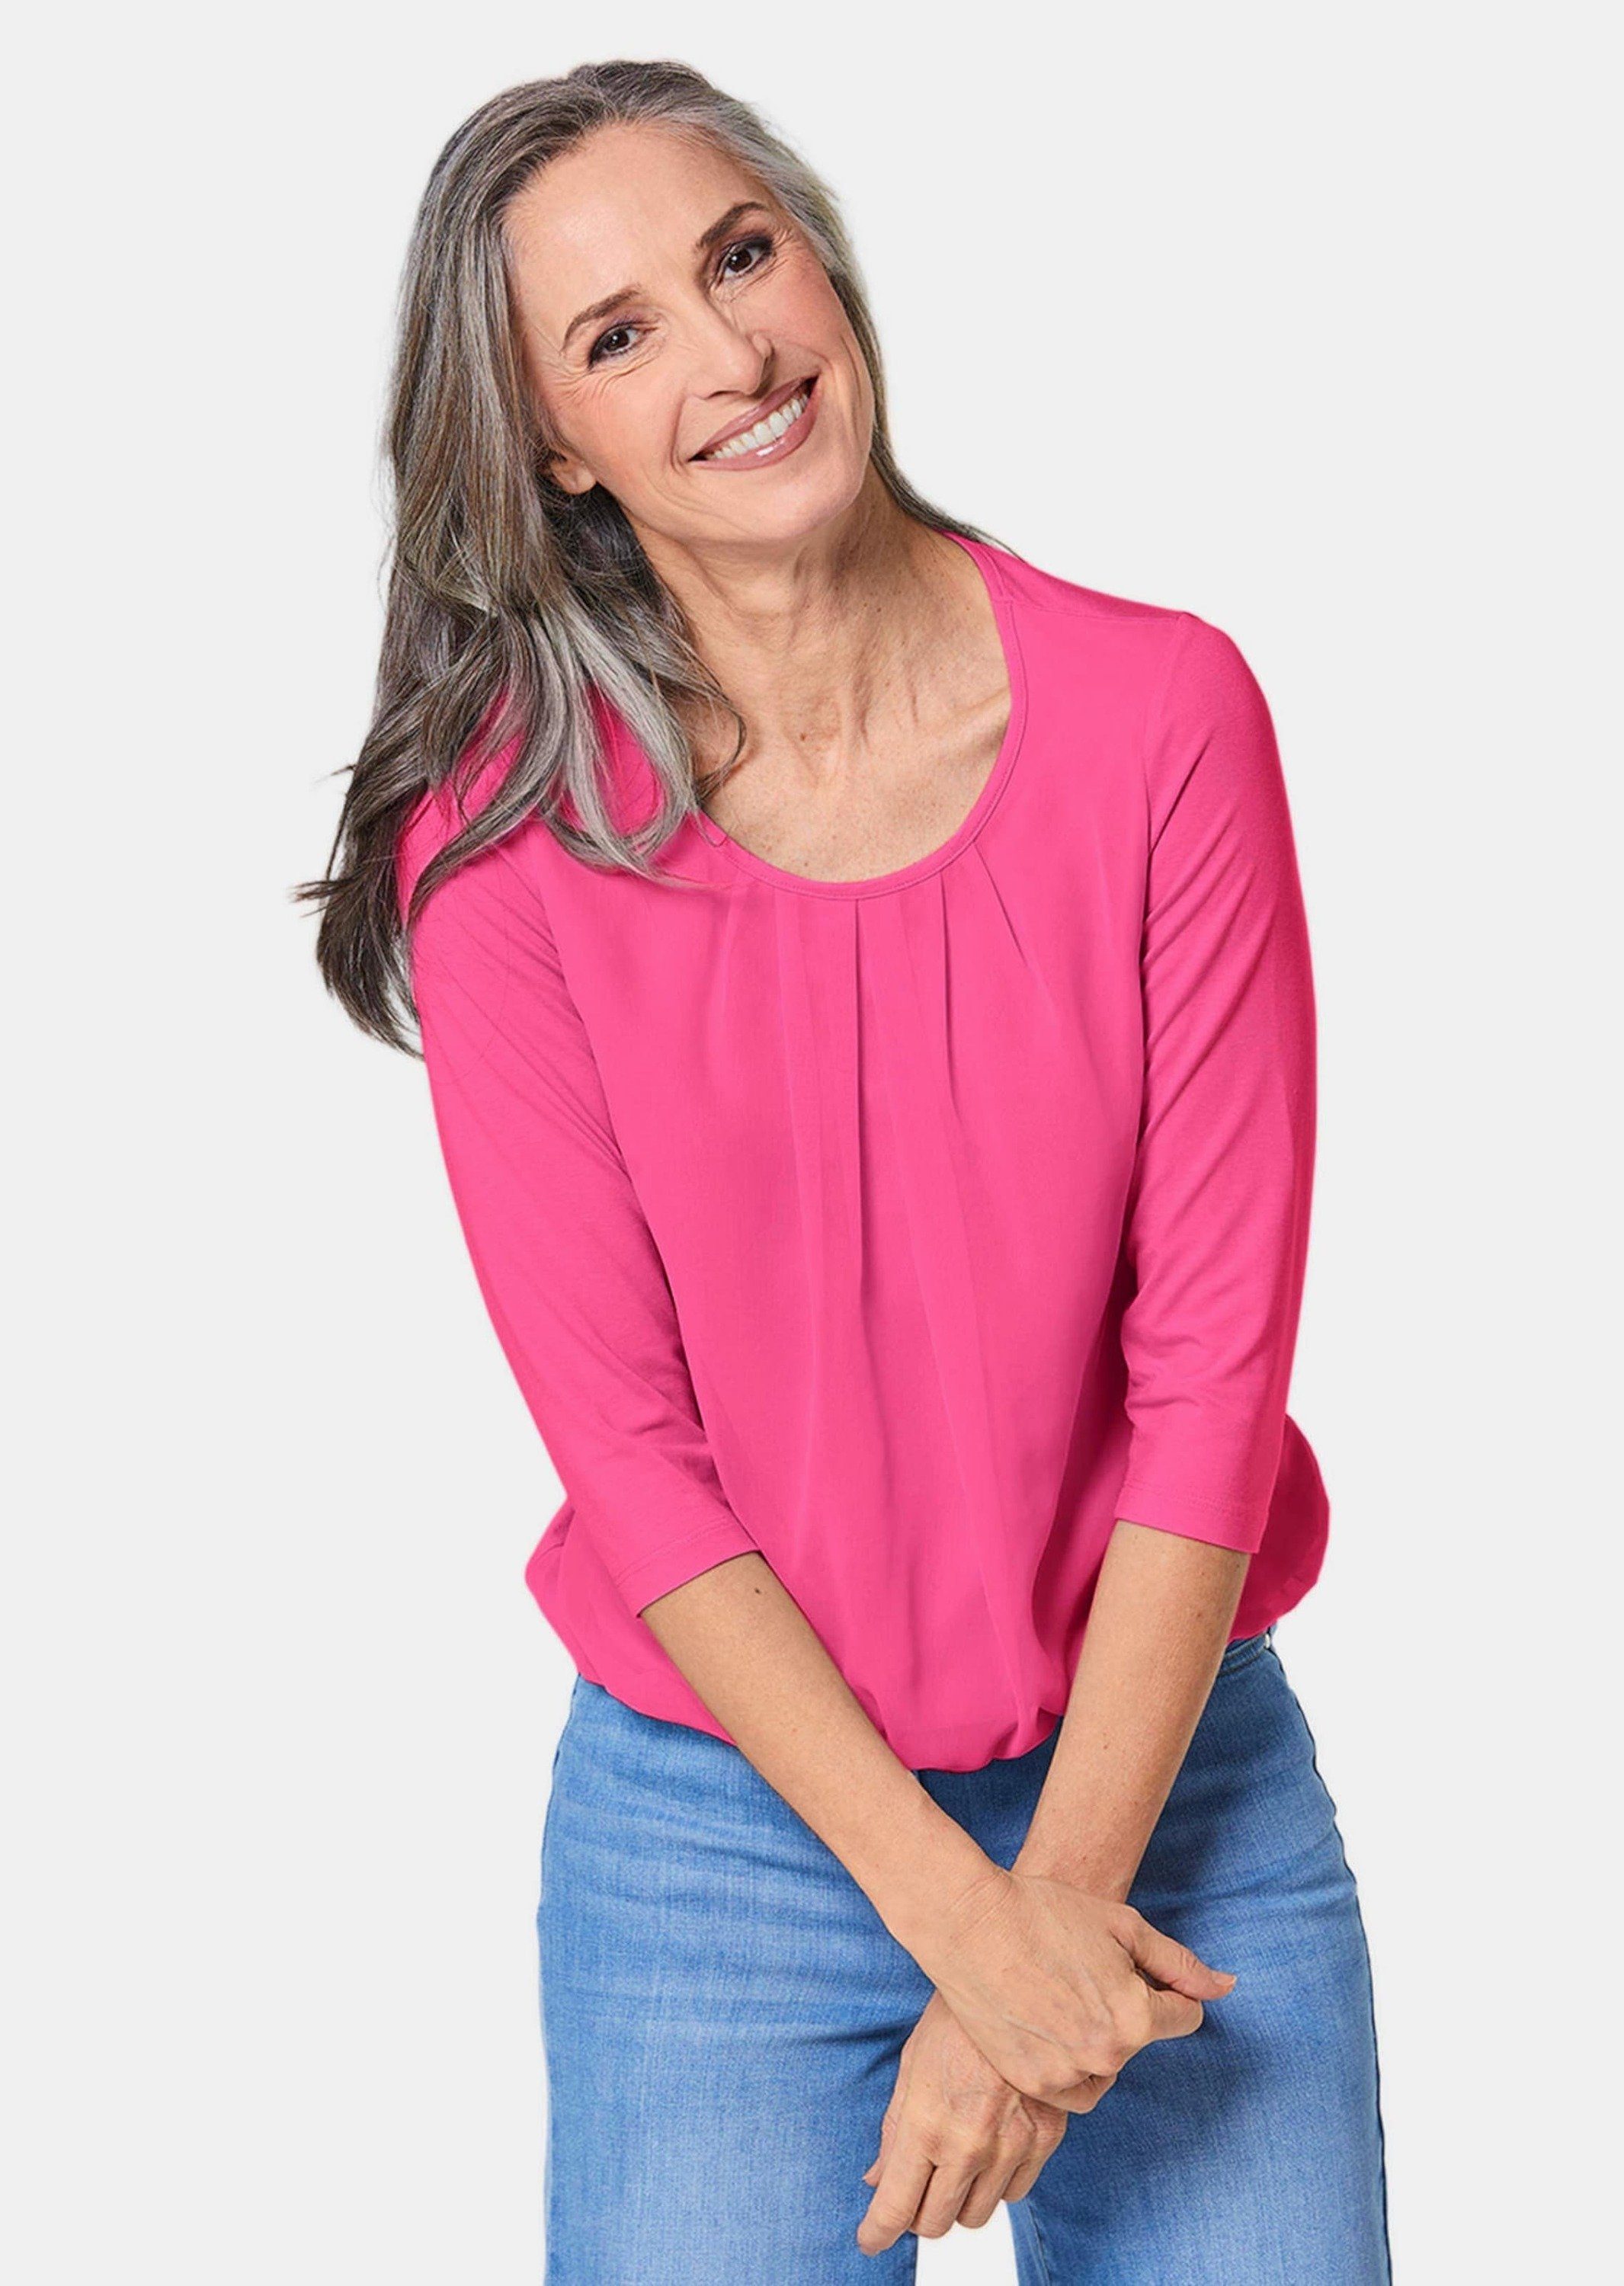 GOLDNER Kurzarmbluse Gepflegtes Shirt pink eleganter Blusen-Optik in